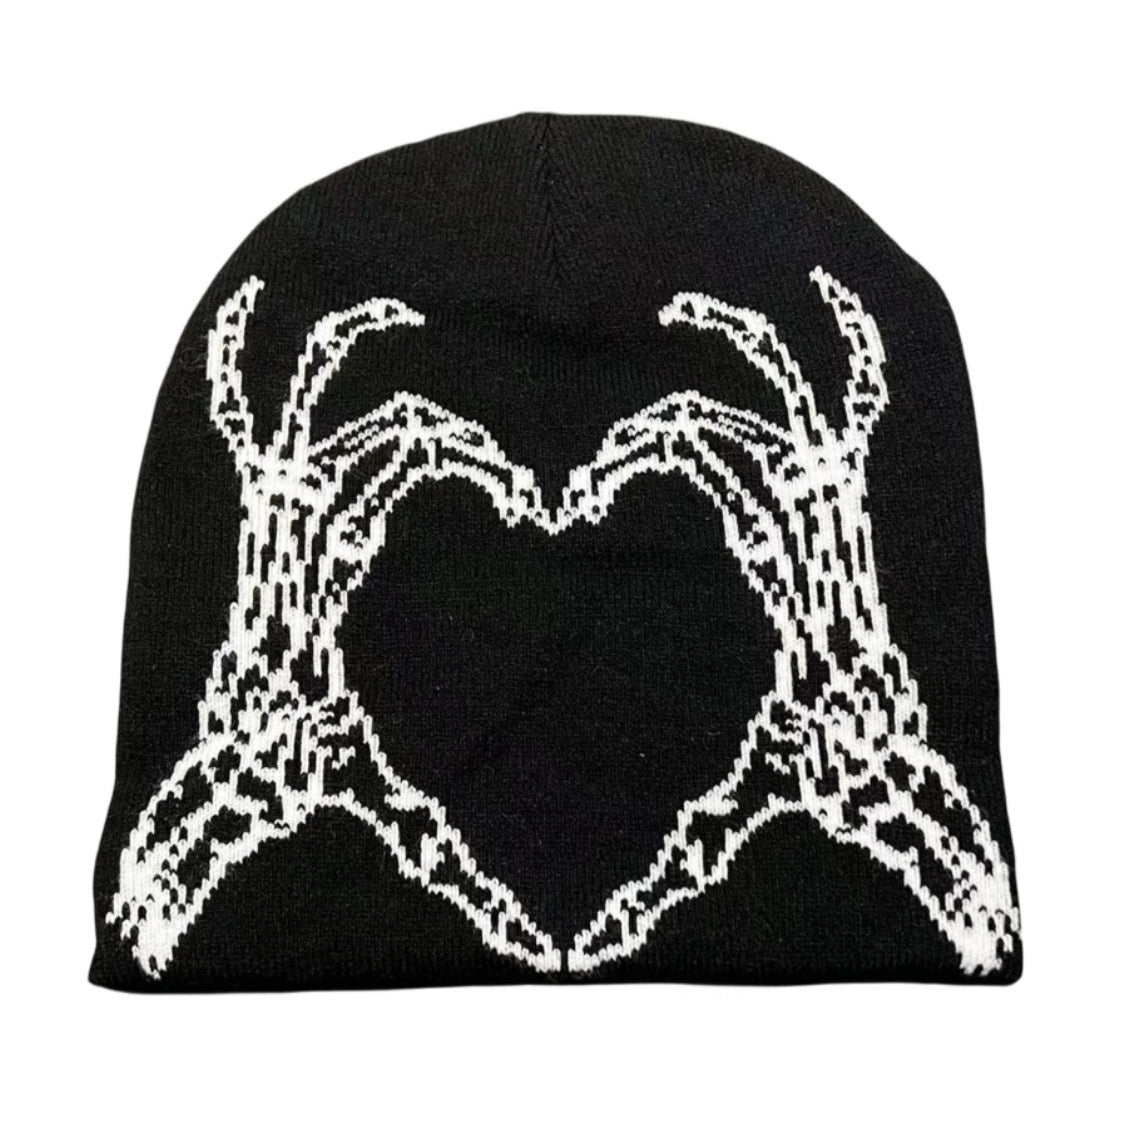 black skeleton heart hat